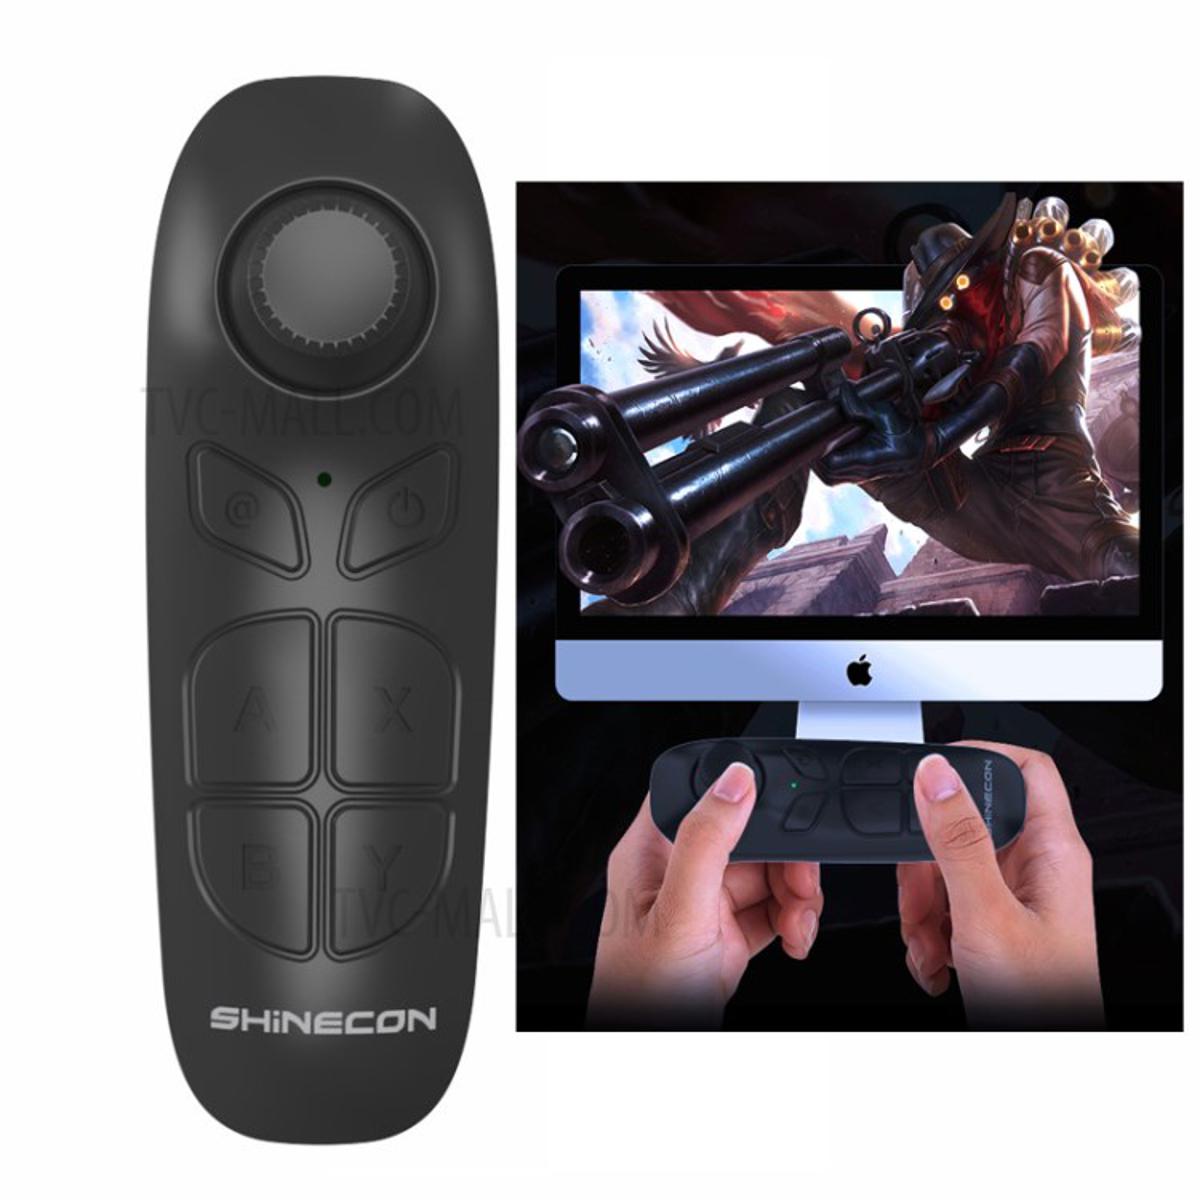 VR Shinecon Portable Wireless Remote Controller SC-B03 Bluetooth